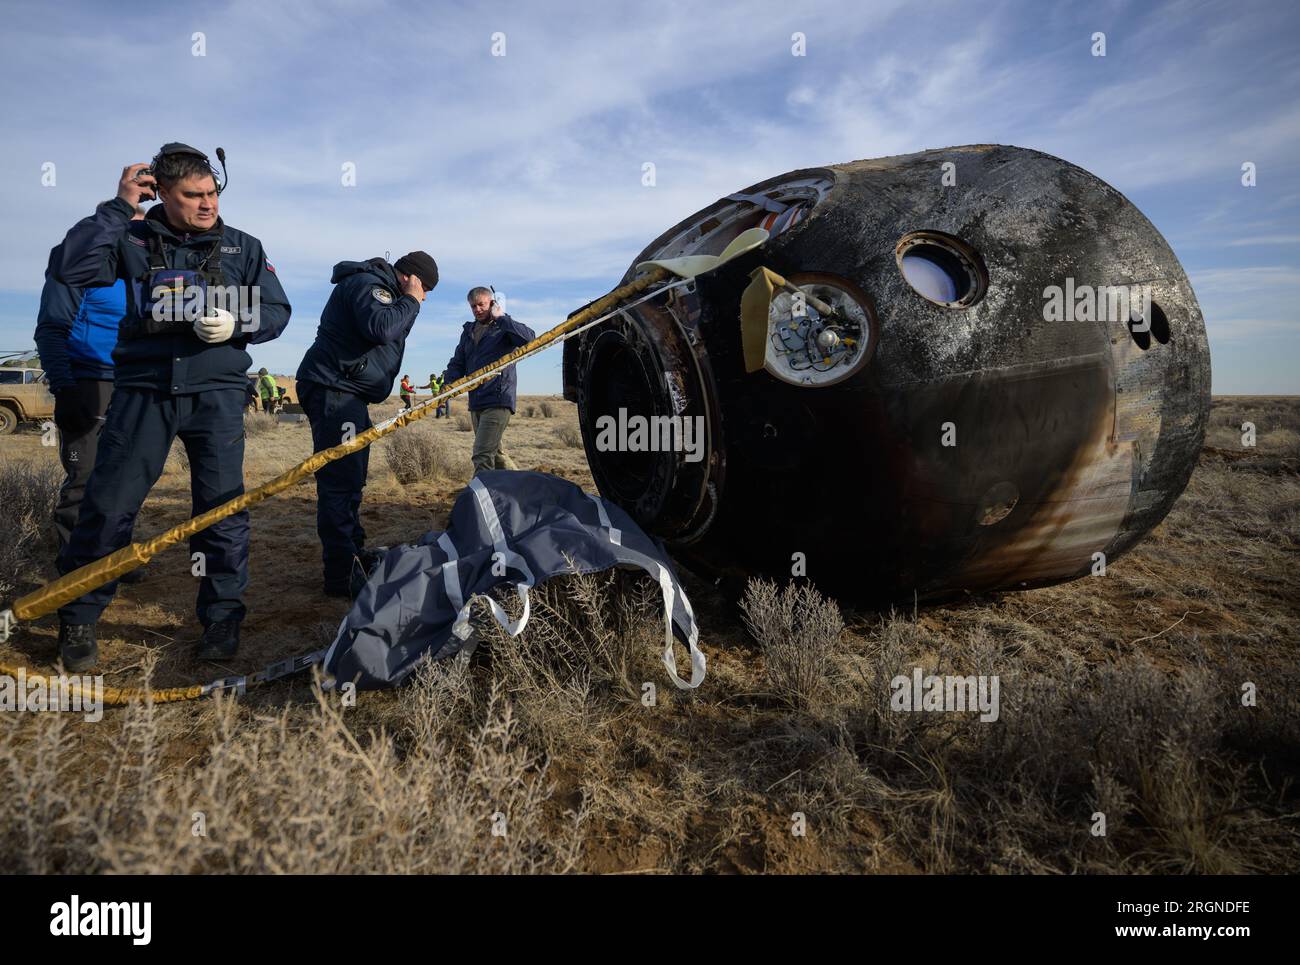 Reportage : expédition 66 atterrissage de Soyouz (mars 2022) - les équipes russes de recherche et sauvetage arrivent à la sonde Soyouz MS-19 peu de temps après son atterrissage dans une zone éloignée près de la ville de Zhezkazgan, Kazakhstan, le mercredi 30 mars 2022. Banque D'Images